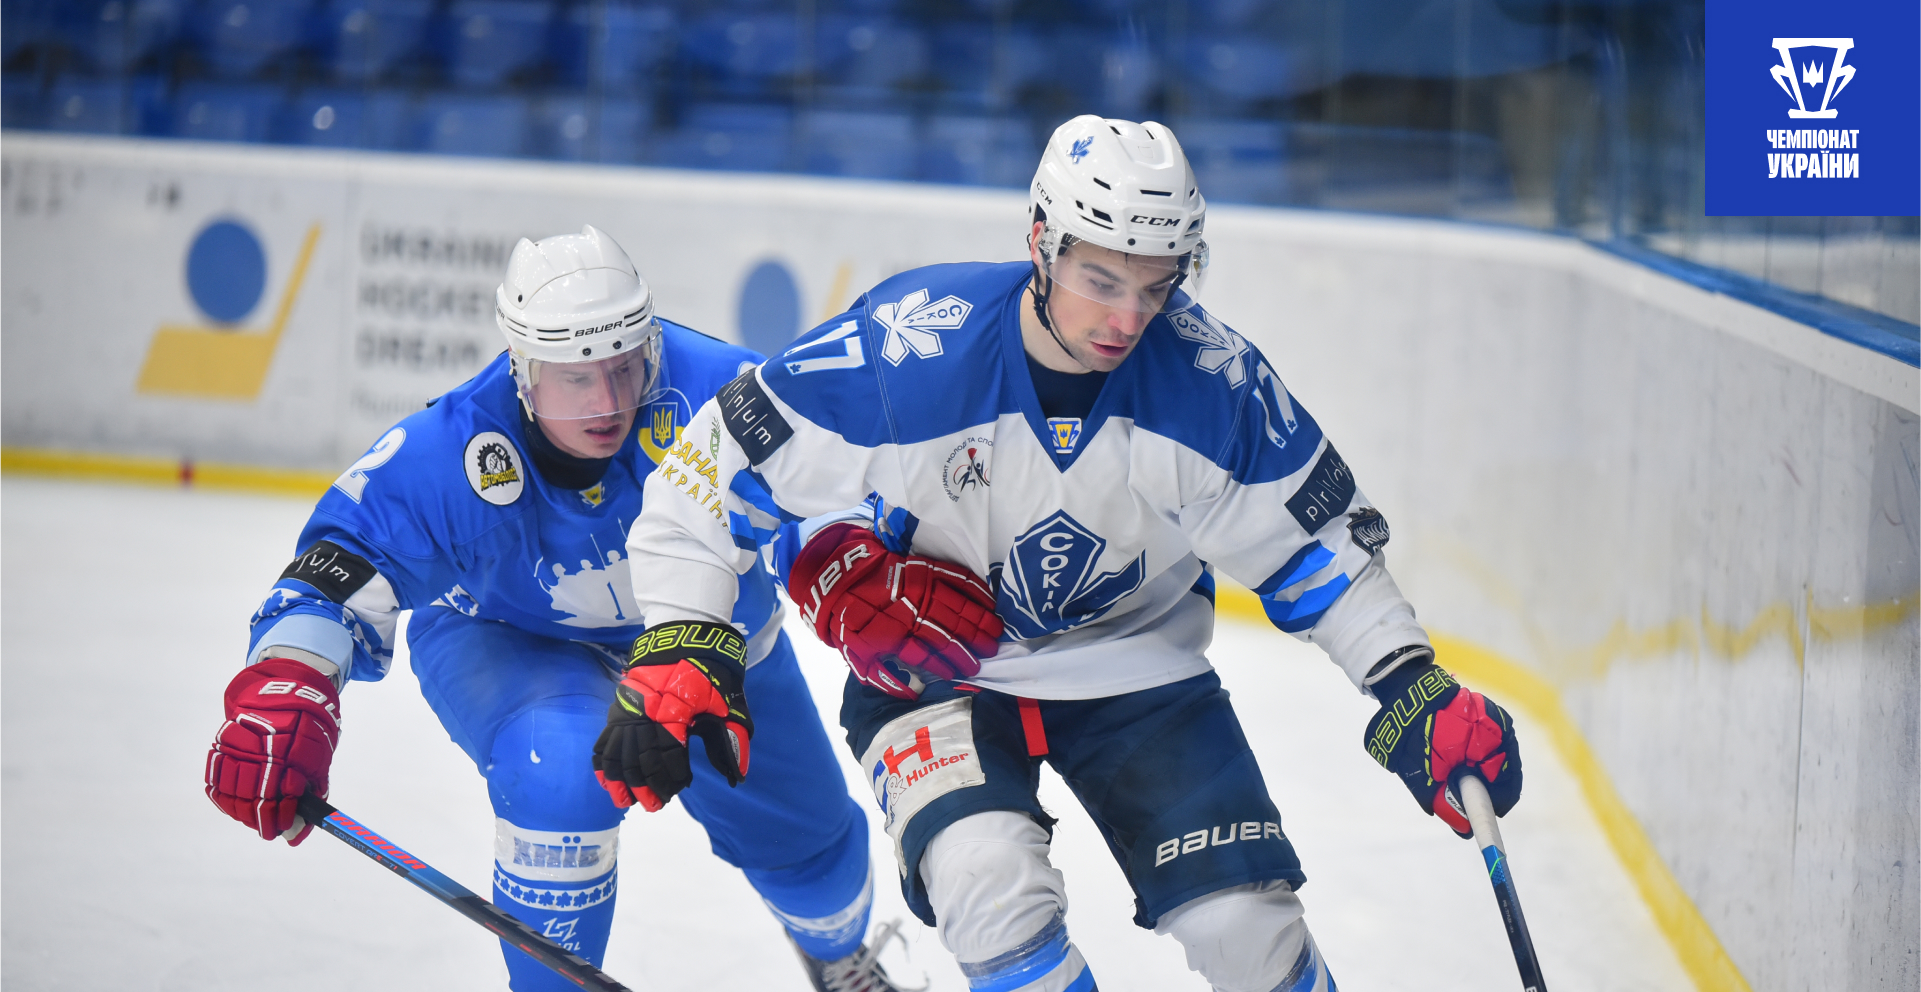 Сокол — зимний чемпион Украины по хоккею